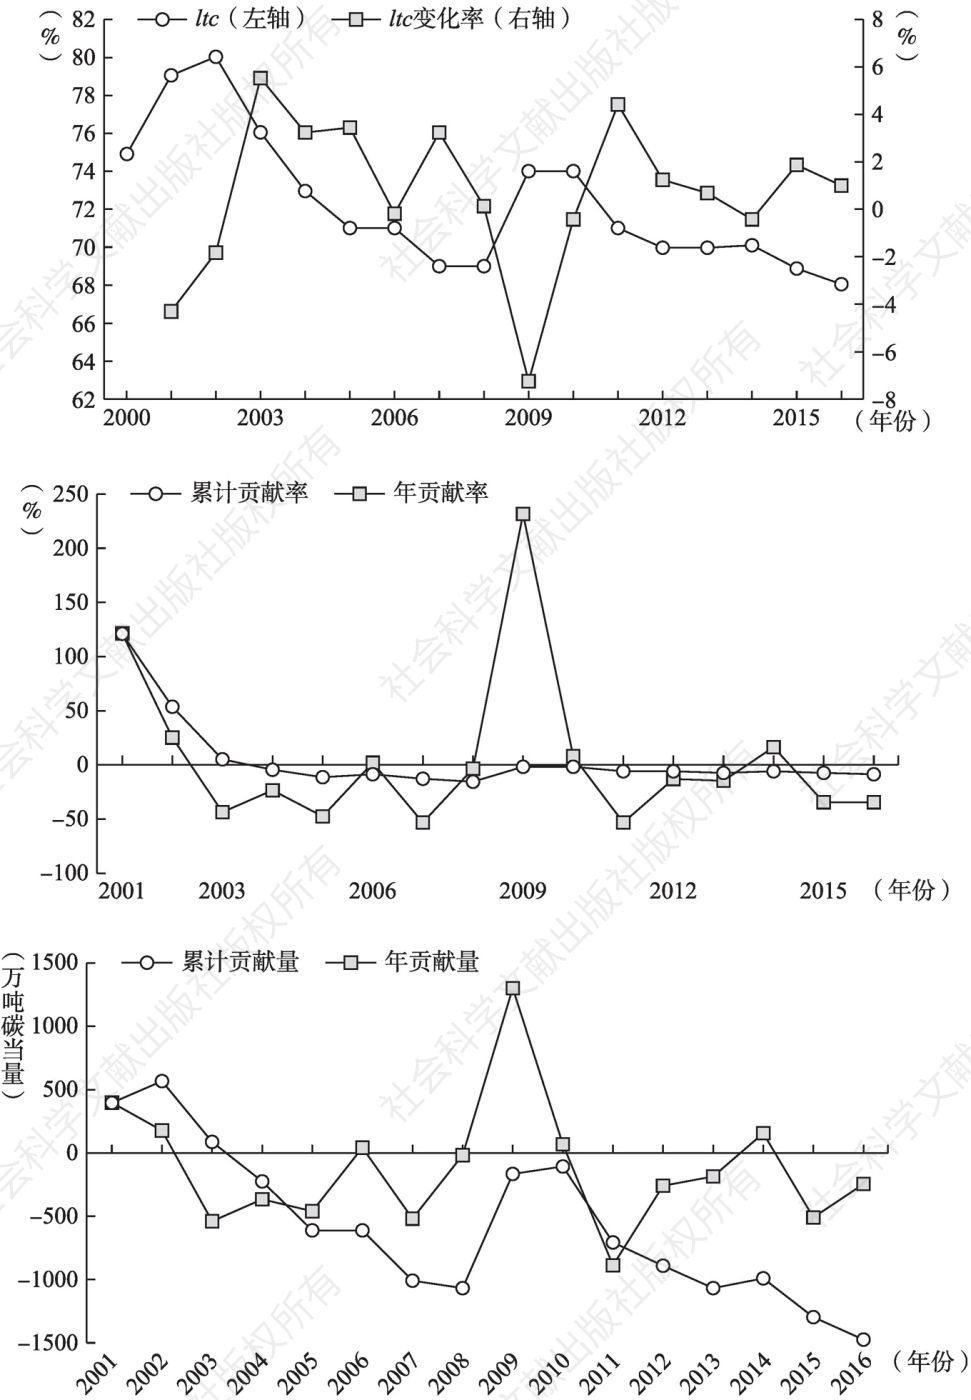 图6.11 2000—2016年中国交通运输用地比例及其对交通运输碳排放的贡献量